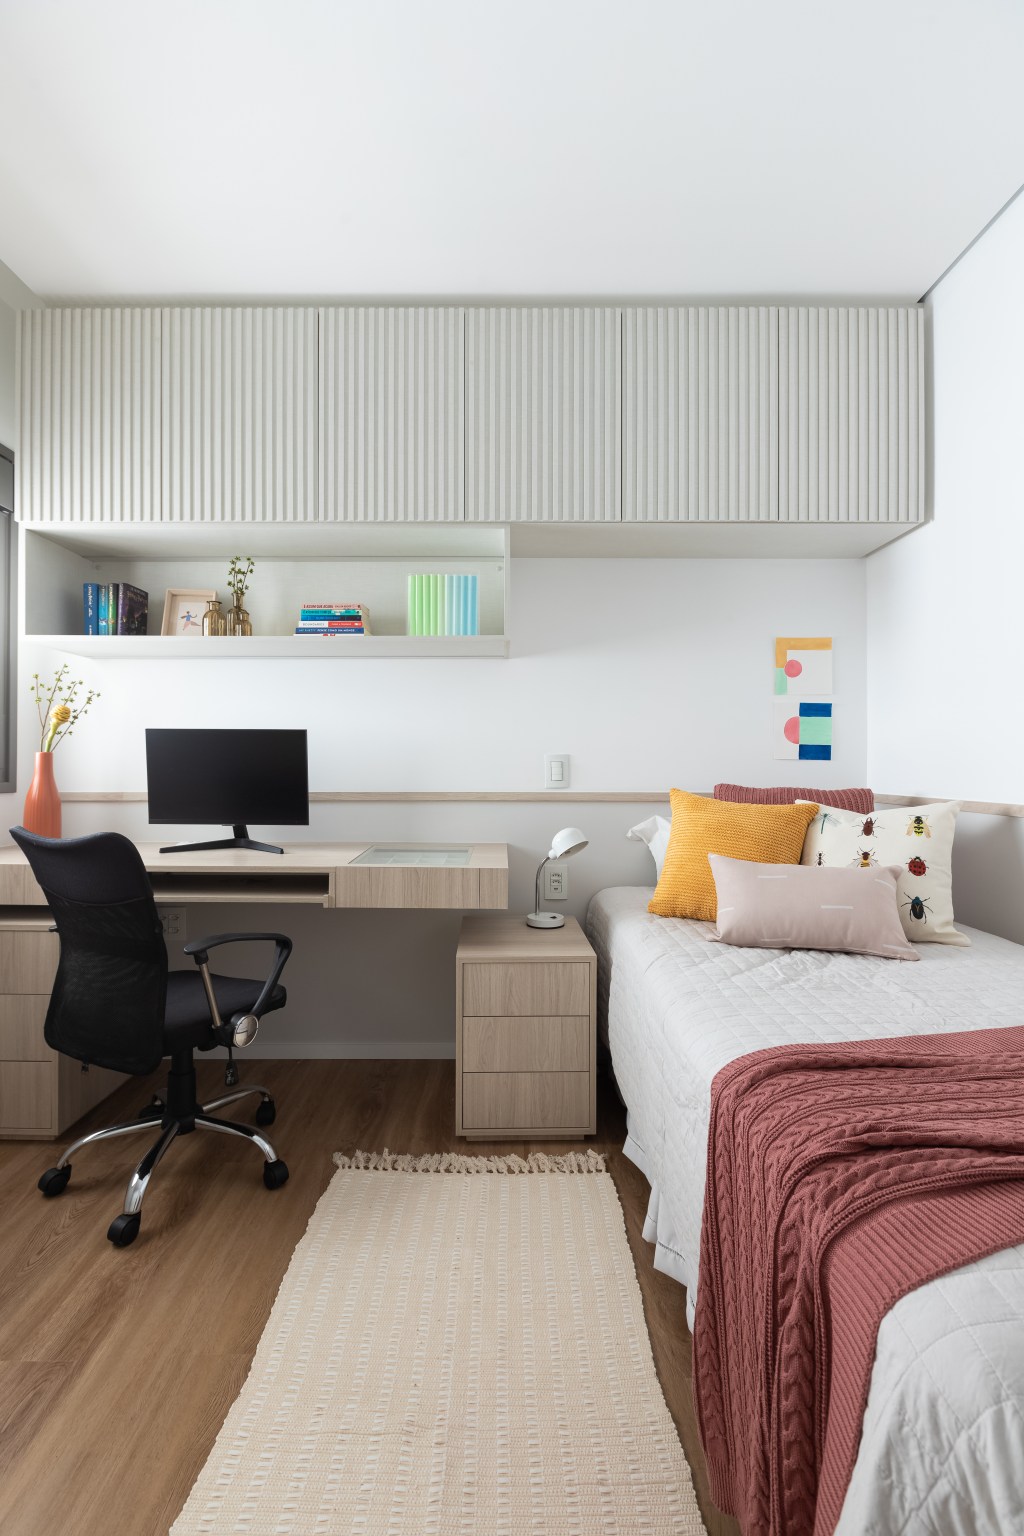 Aconchego e praticidade: apartamento de 126m² possui porcelanato acinzentado neutro e vinílico. Projeto do Estúdio Bena. Na foto, quarto infantil com detalhes coloridos